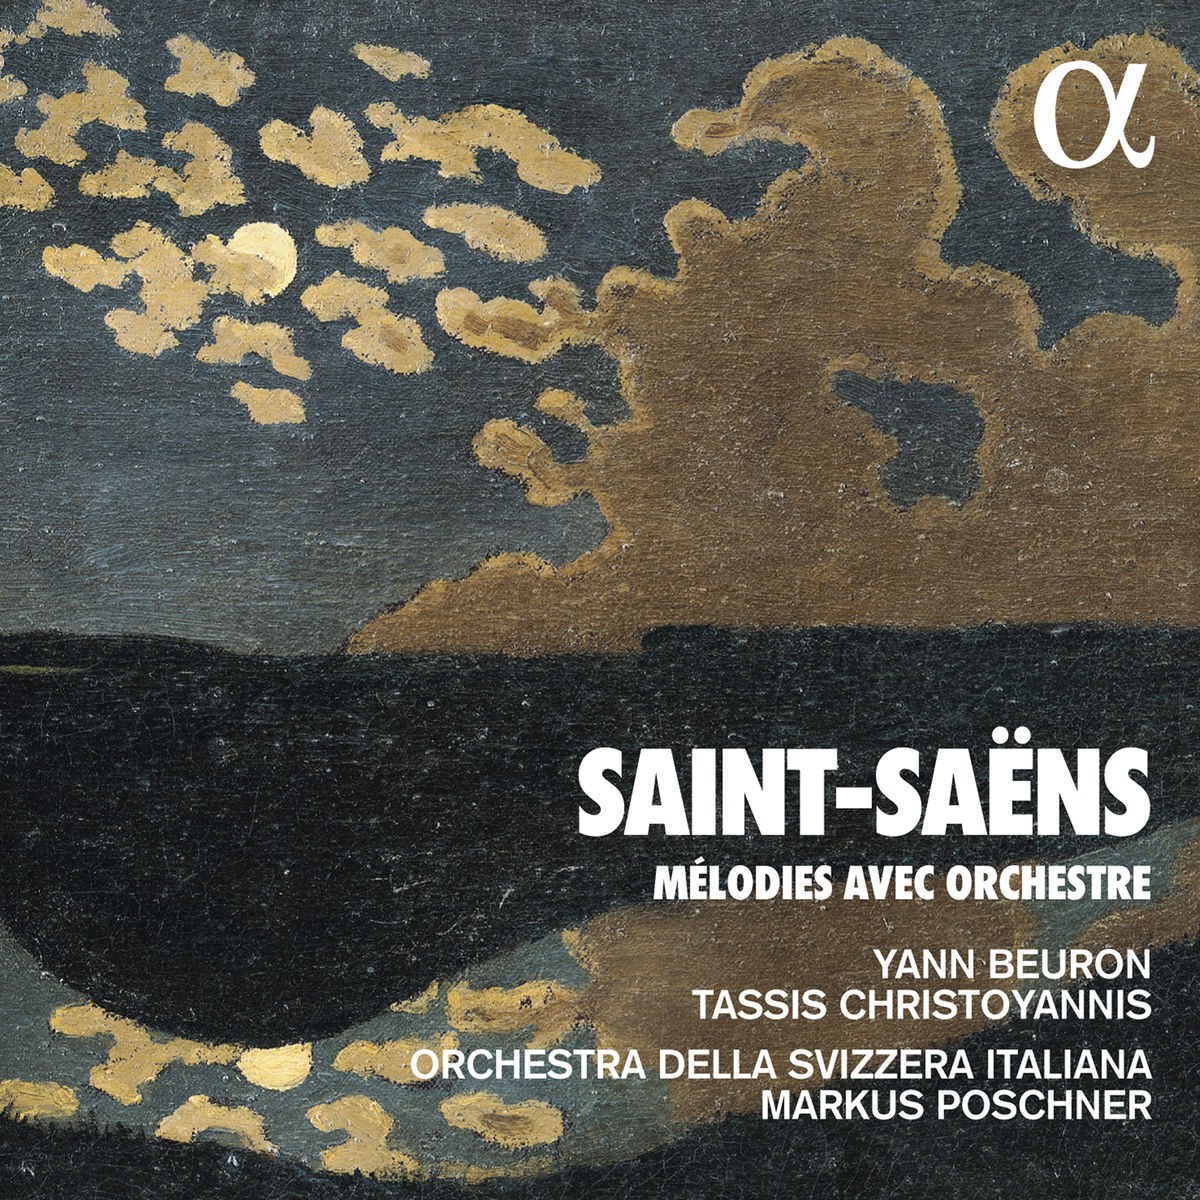 Yann Beuron, Tassis Christoyannis, Markus Poschner, Orchestra della Svizzera Italiana - Saint-Saens: Melodies avec orchestre (2017) [FLAC 24bit/96kHz]